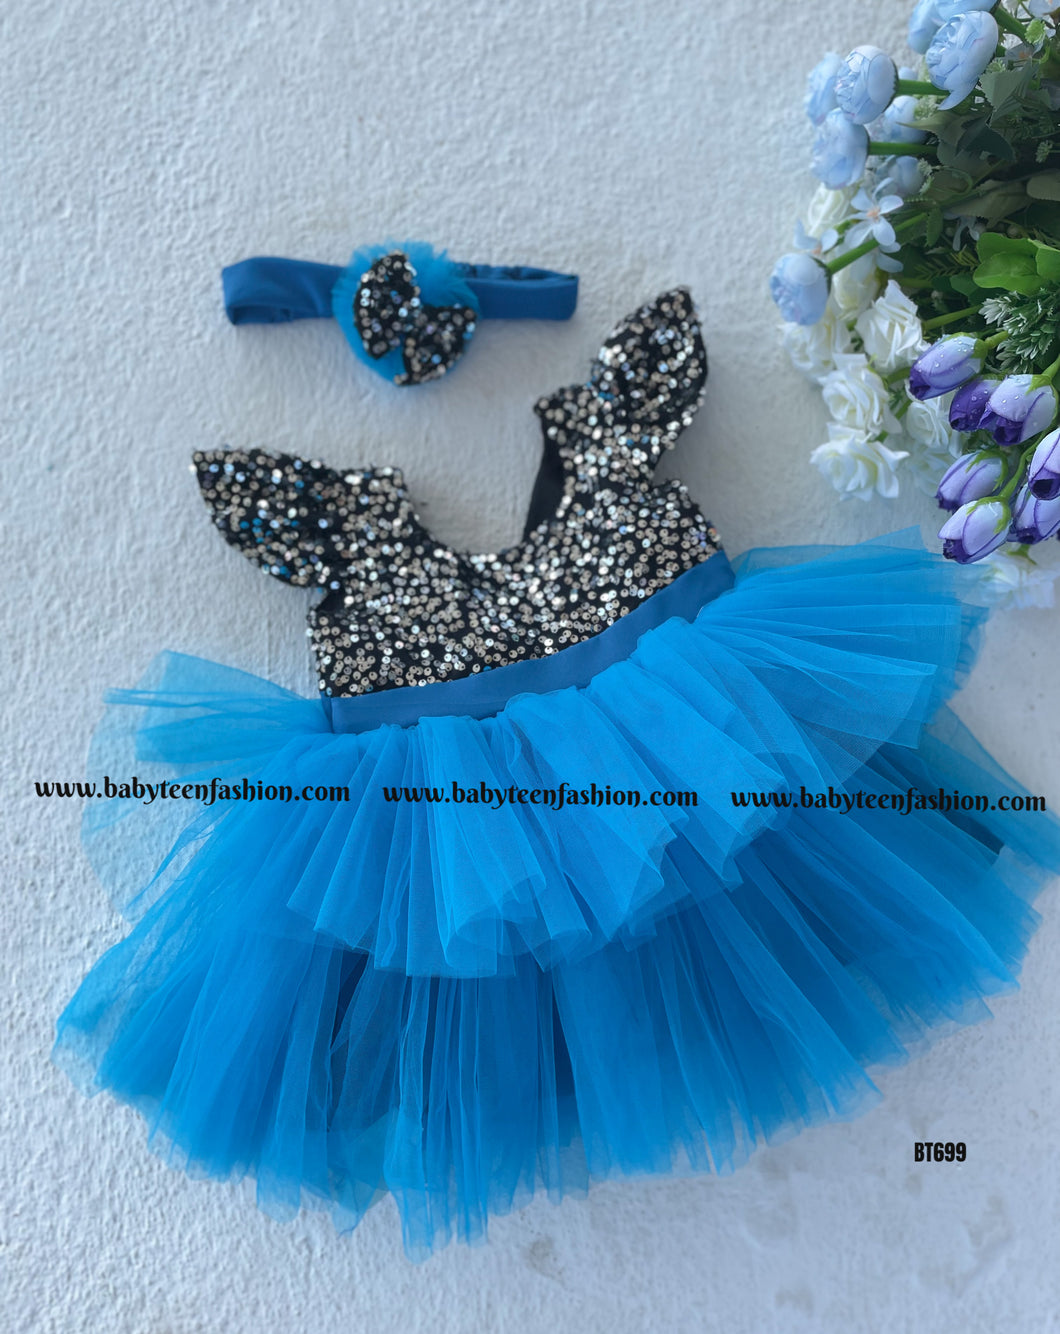 BT699 Crystal Ocean – Sparkling Blue Dress for Little Fashionistas